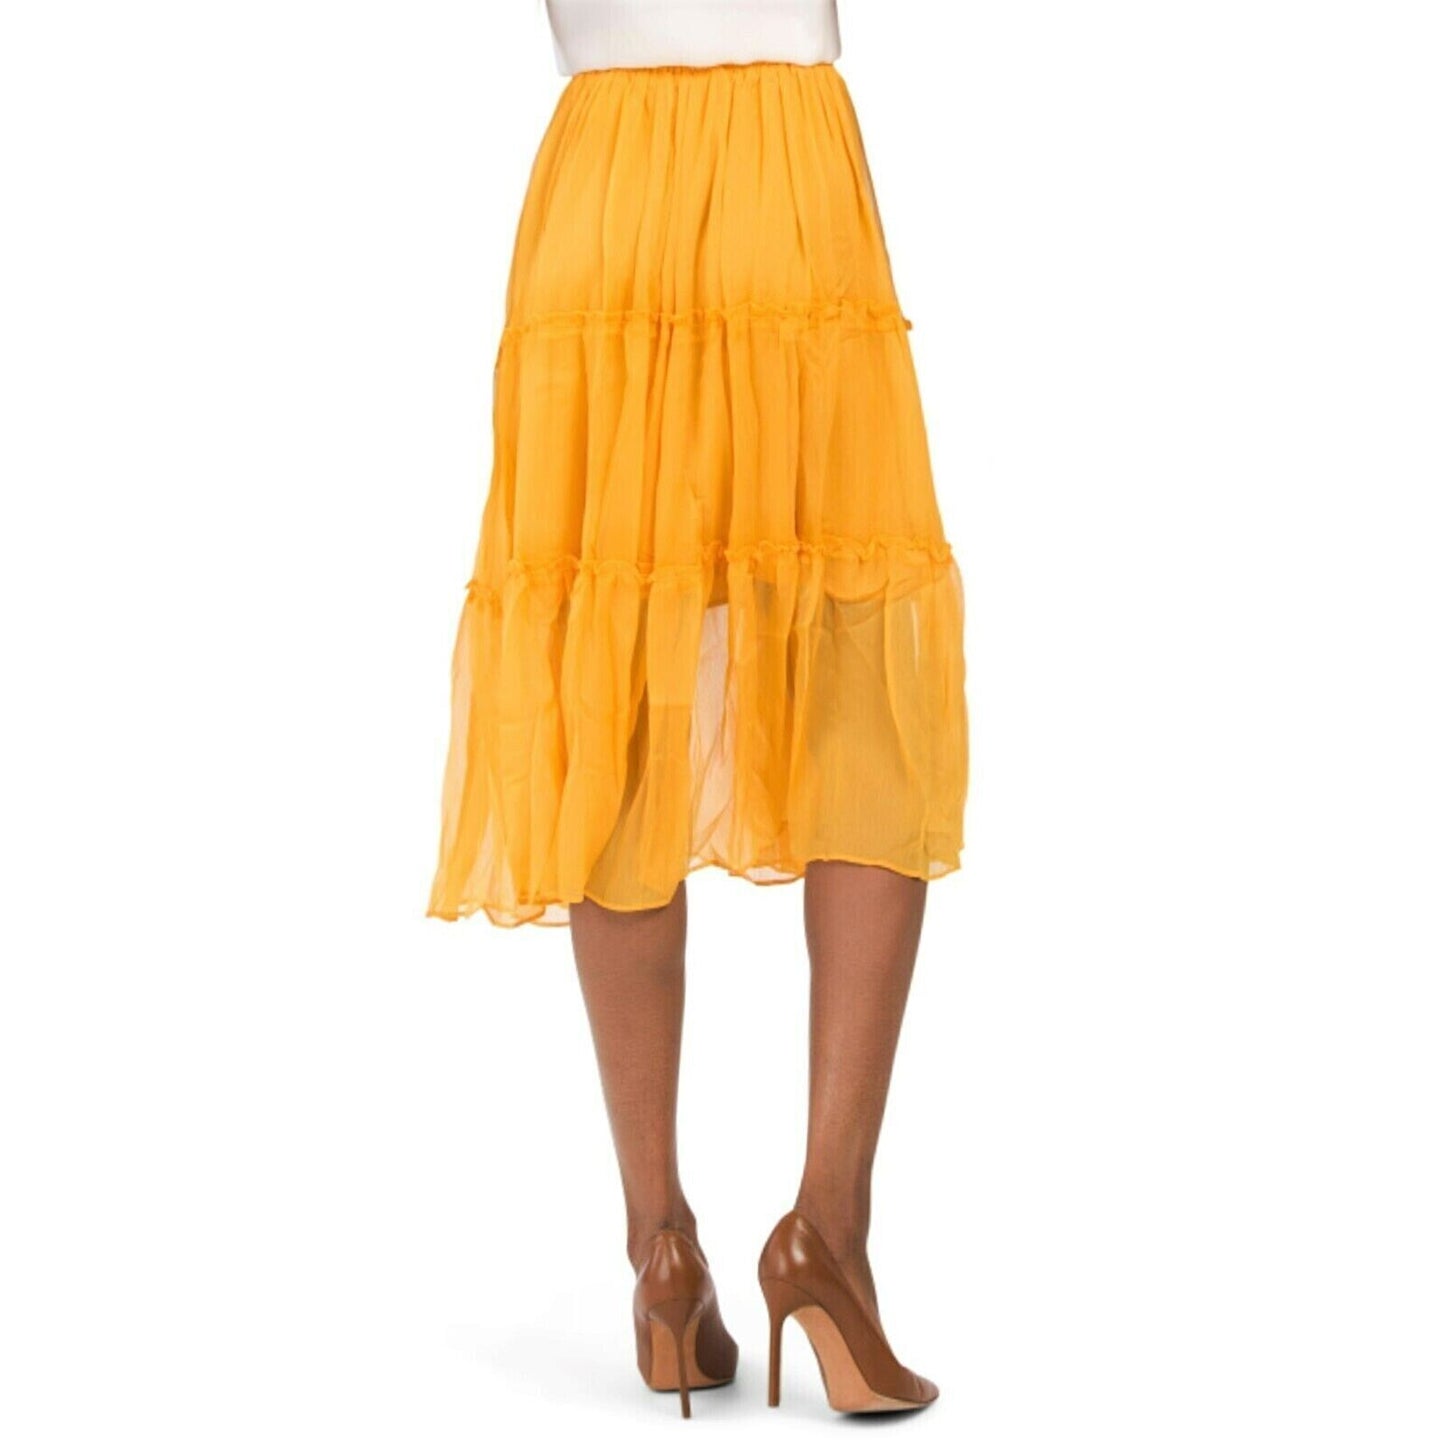 WDNY Tiered Sheer Overlay Ruffle Trim Elastic Waist Flowy Midi Skirt